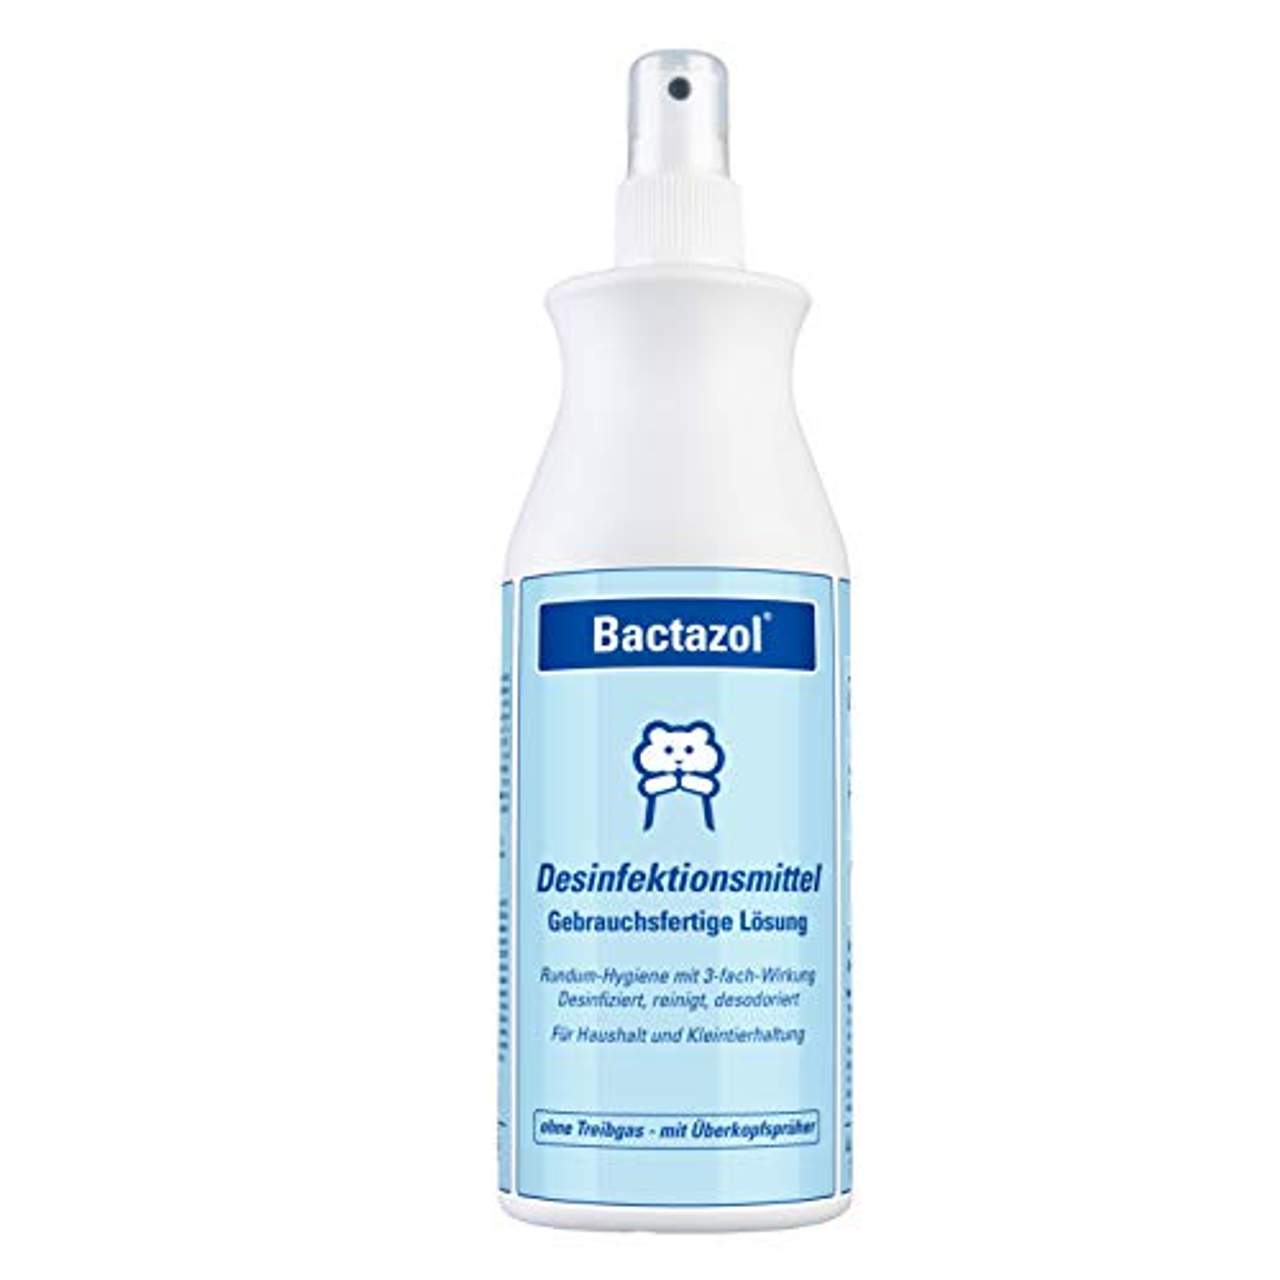 Bactazol Desinfektionsmittel 500ml Schutz vor Viren